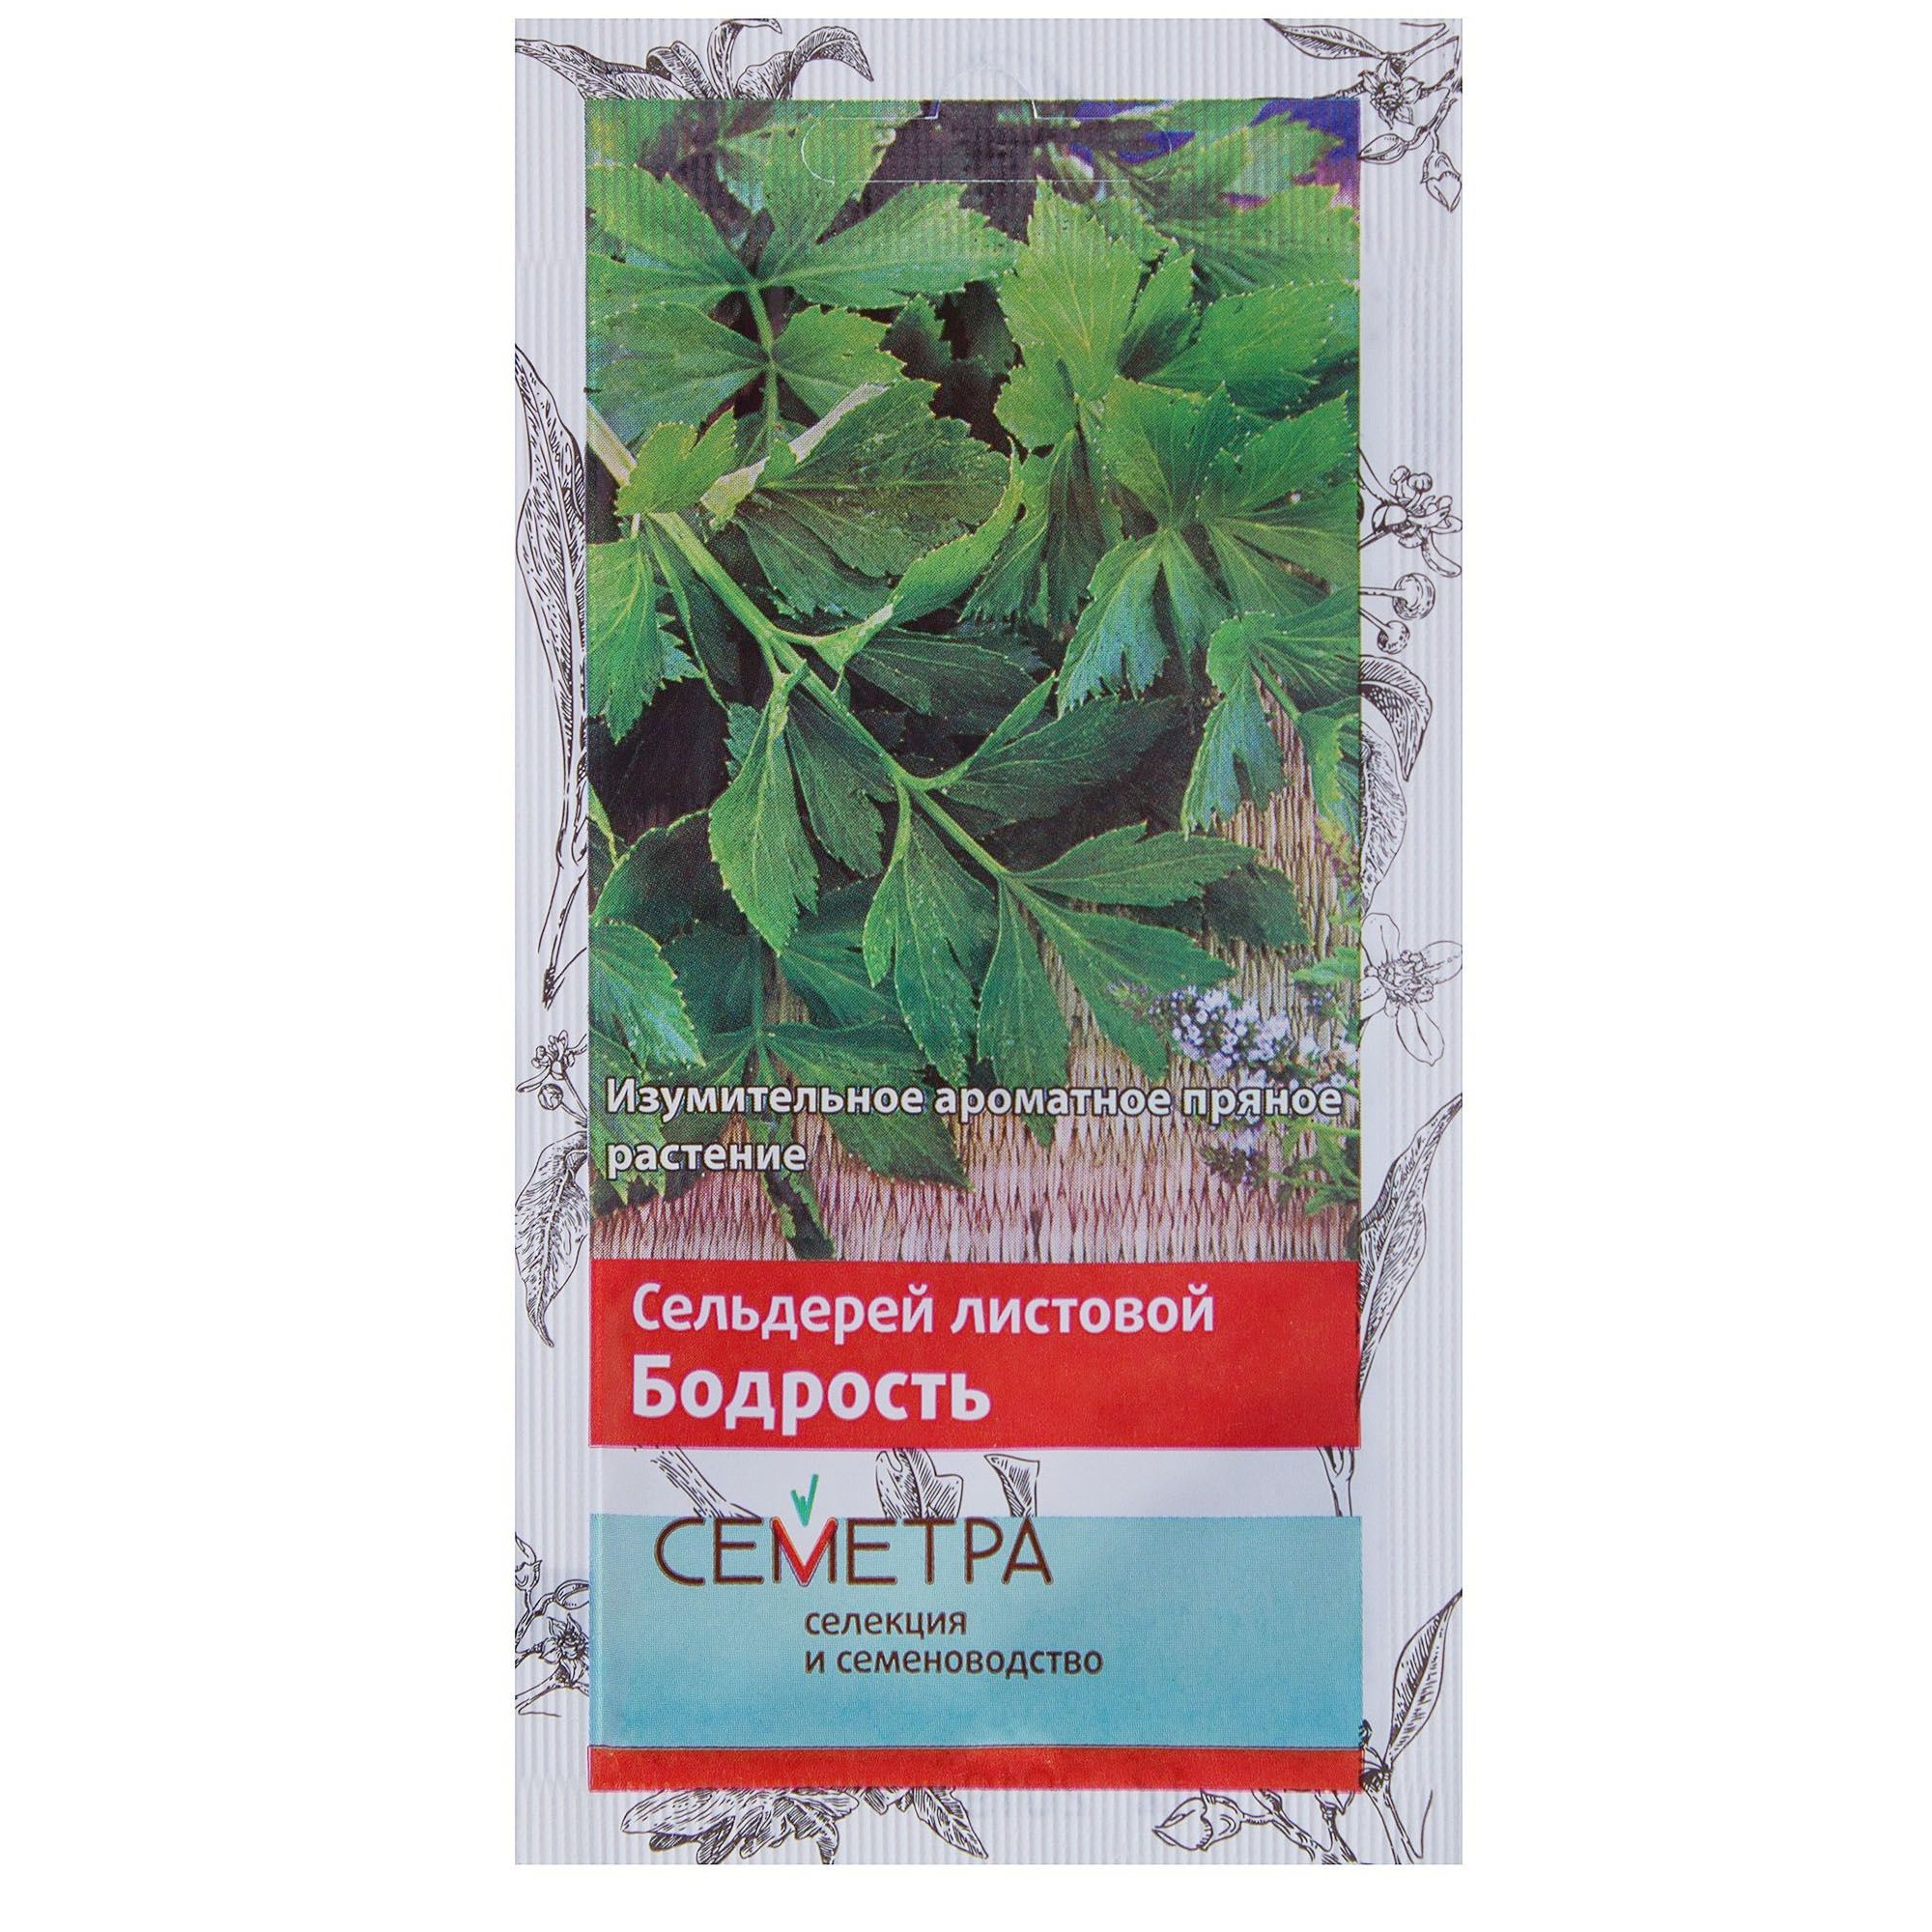 Семена сельдерей листовой Бодрость Семетра (0.5 г) - Купить с доставкой вСТРОЙУДАЧЕ